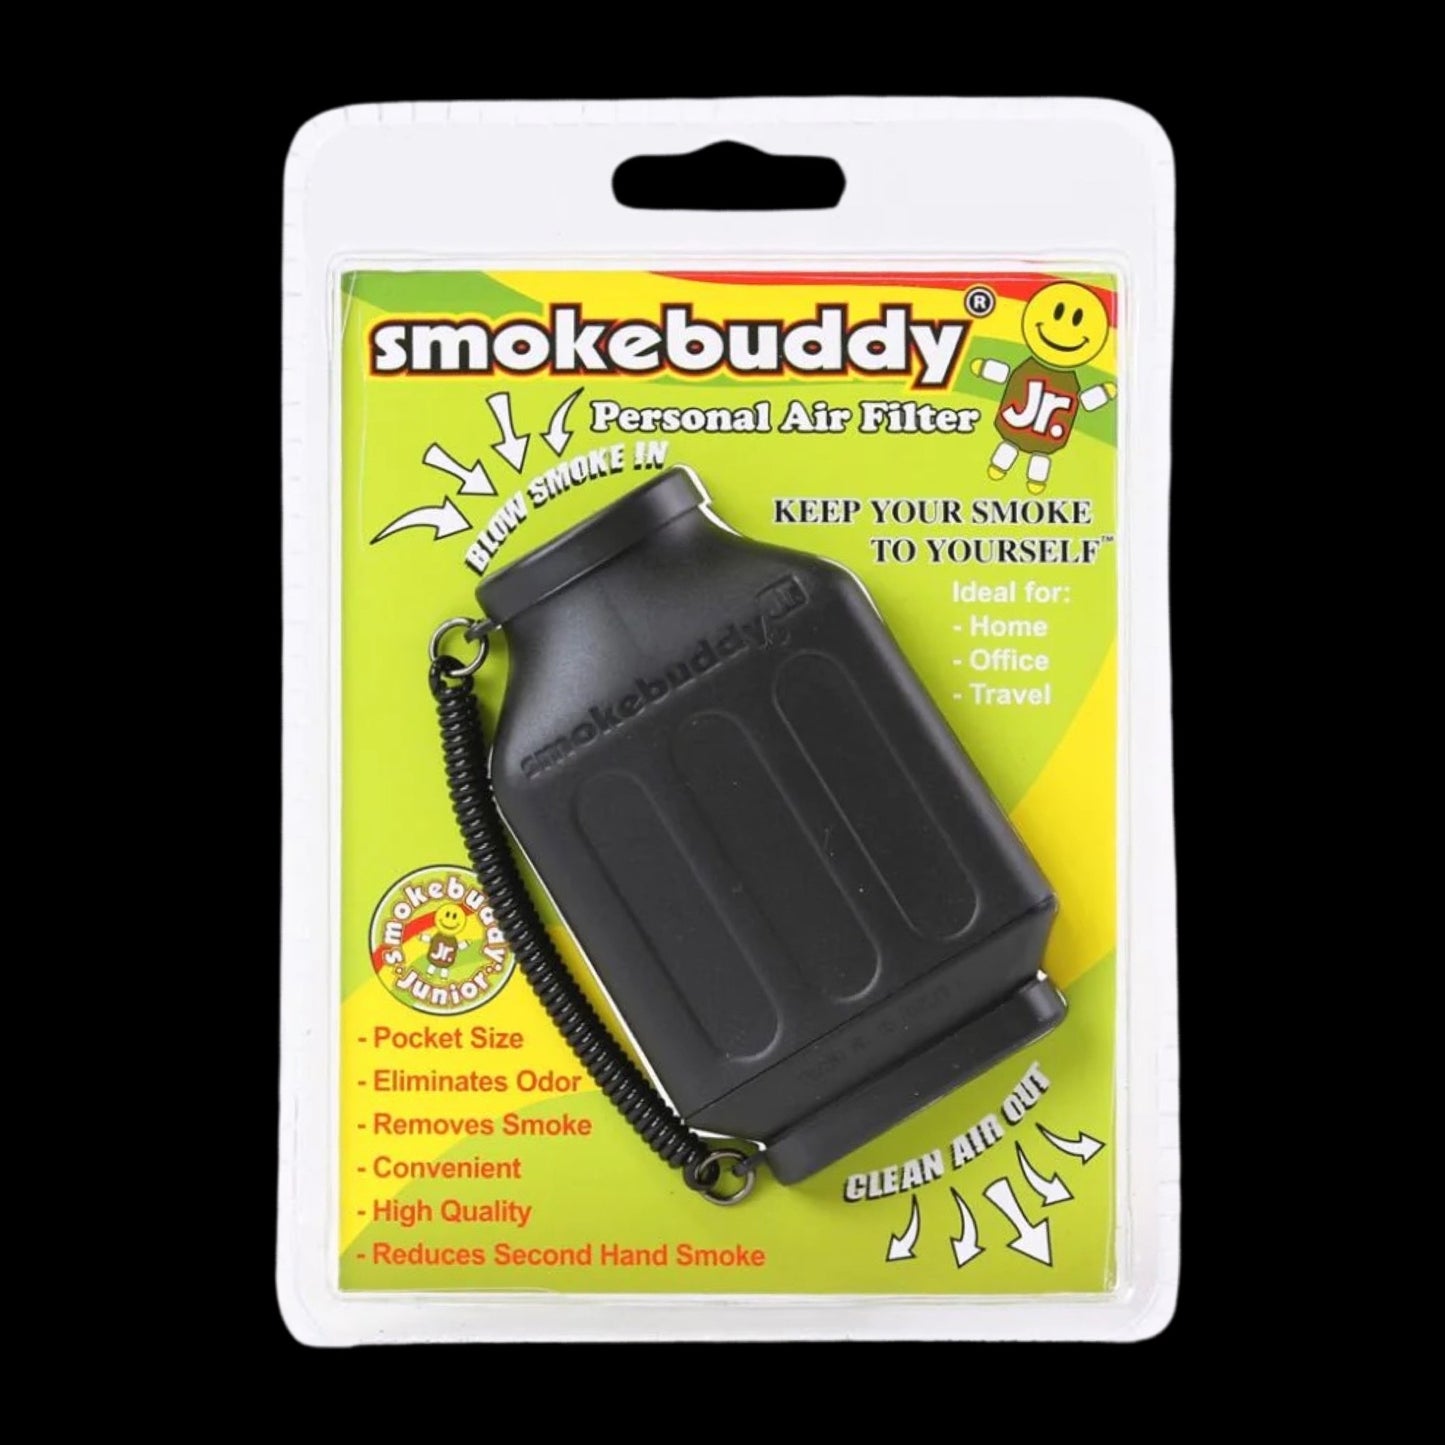 Smoke buddy Jr